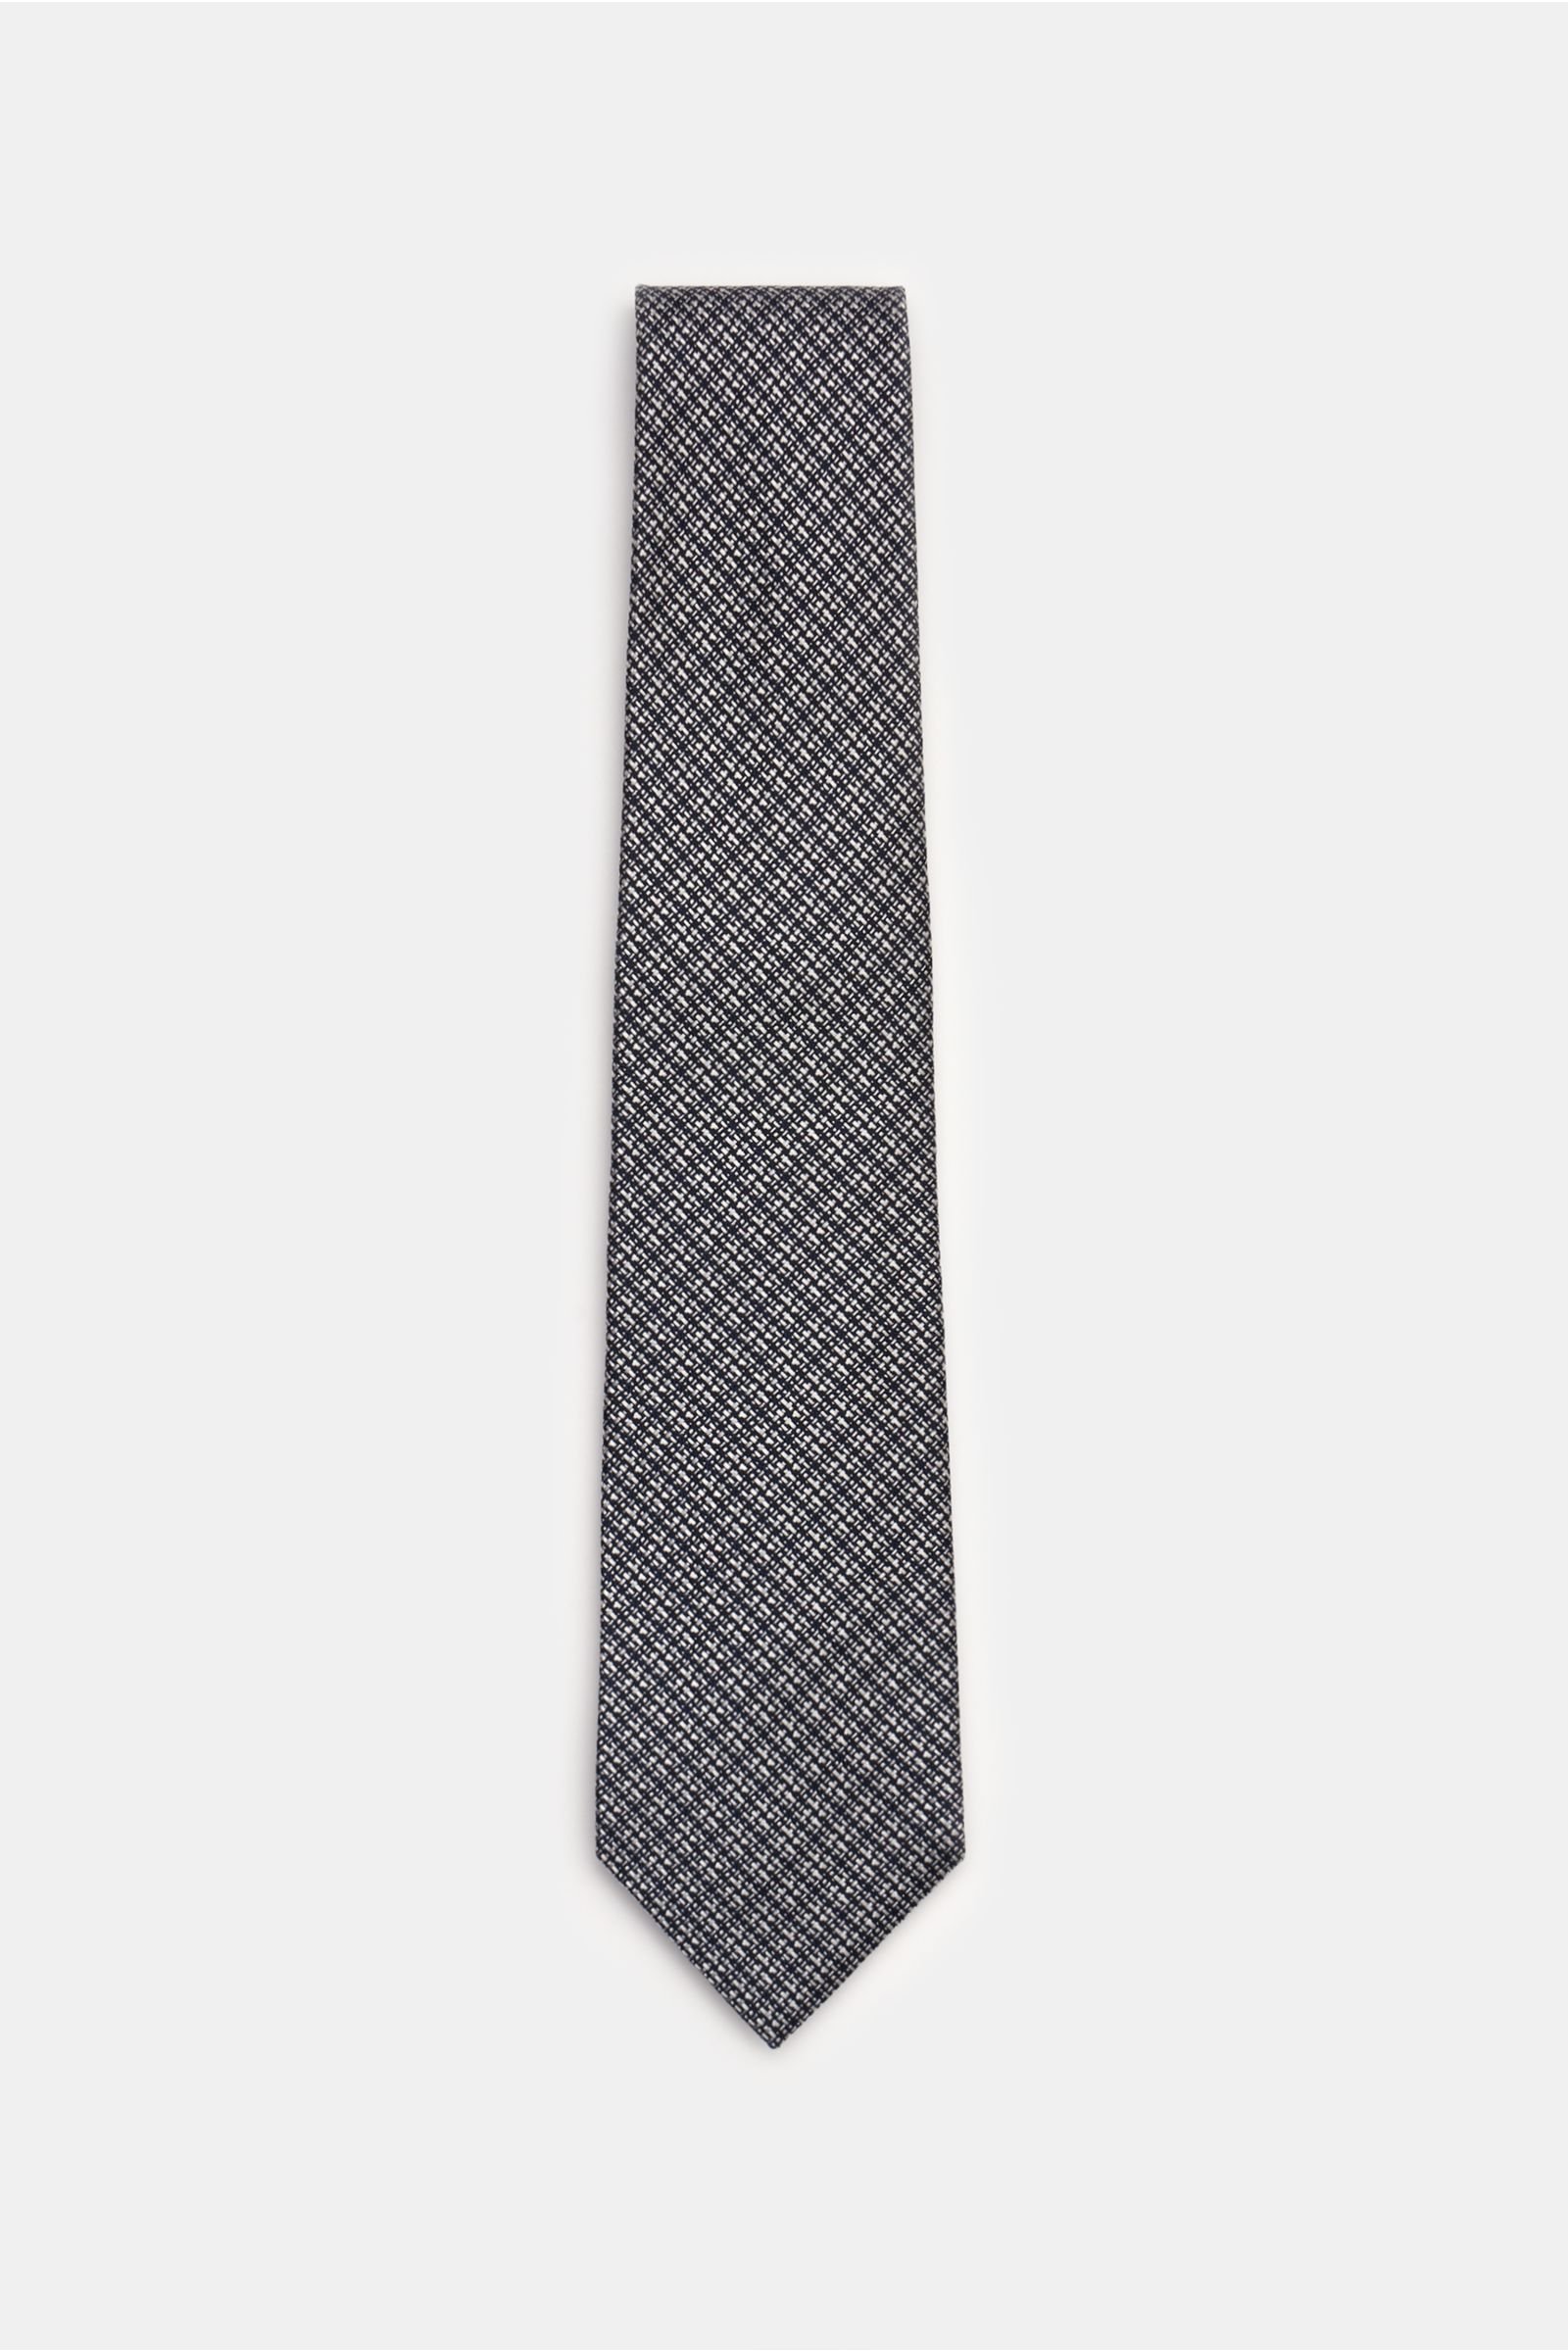 Silk tie navy/silver-grey checked